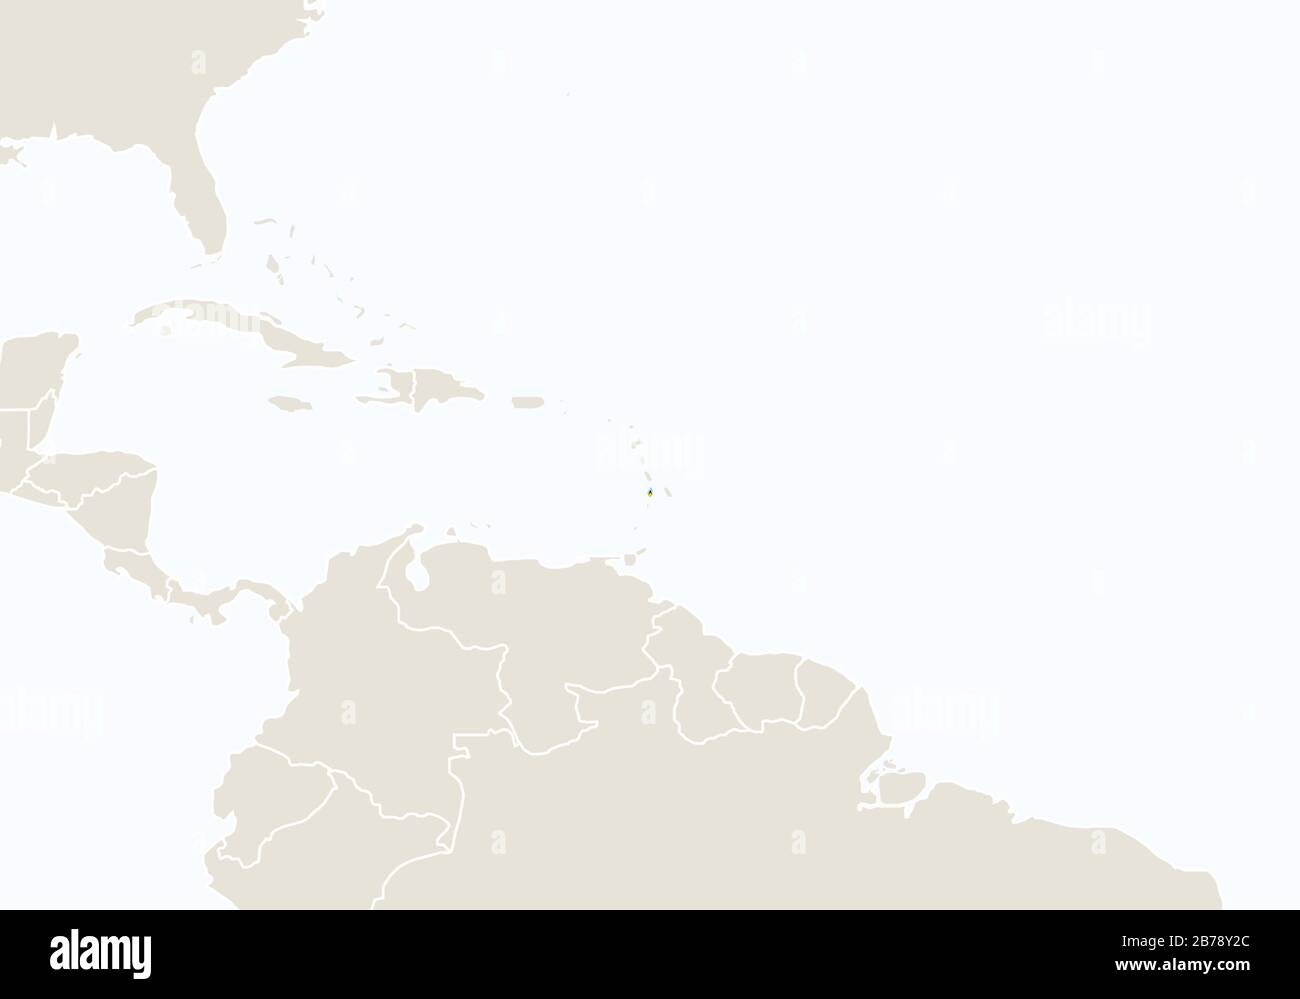 Amérique du Sud avec la carte mise en évidence de Sainte-Lucie. Illustration Vectorielle. Illustration de Vecteur